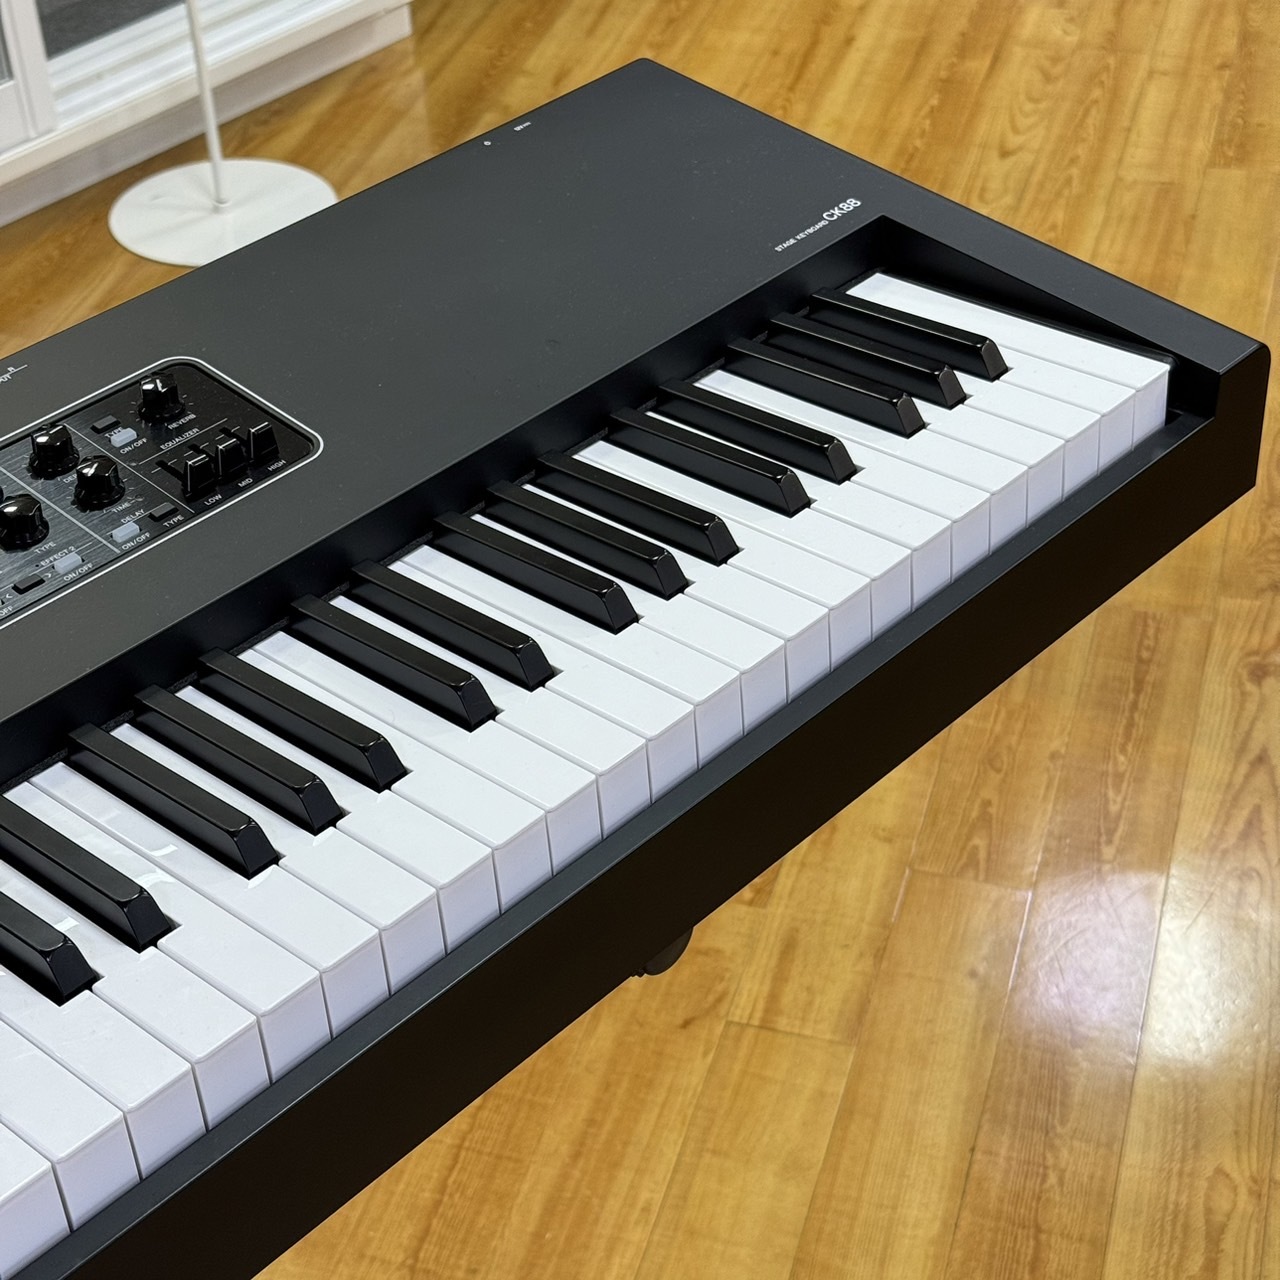 エレピ 電子ピアノ Technics SX-P30 88鍵 ピアノタッチ - 鍵盤楽器、ピアノ